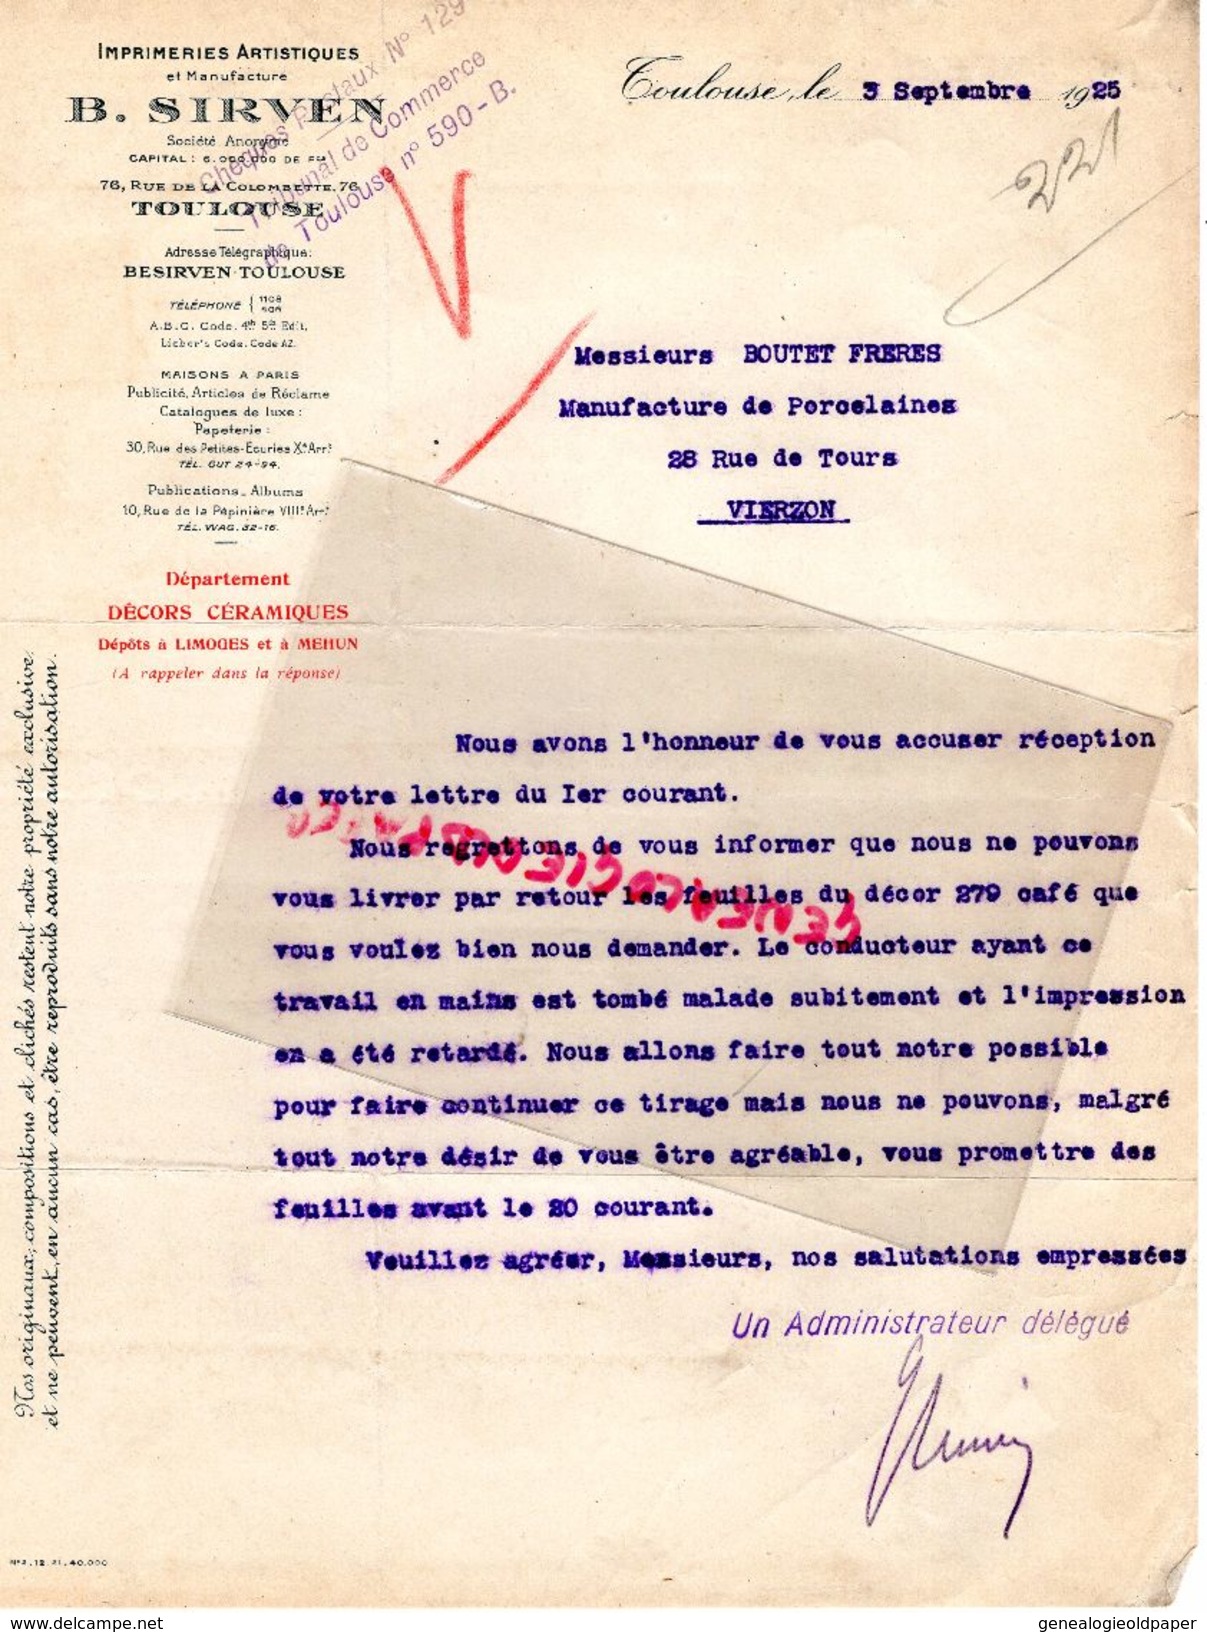 31- TOULOUSE- LETTRE B. SIRVEN- IMPRIMERIE ARTISTIQUE MANUFACTURE-76 RUE COLOMBETTE- 1925 - Druck & Papierwaren